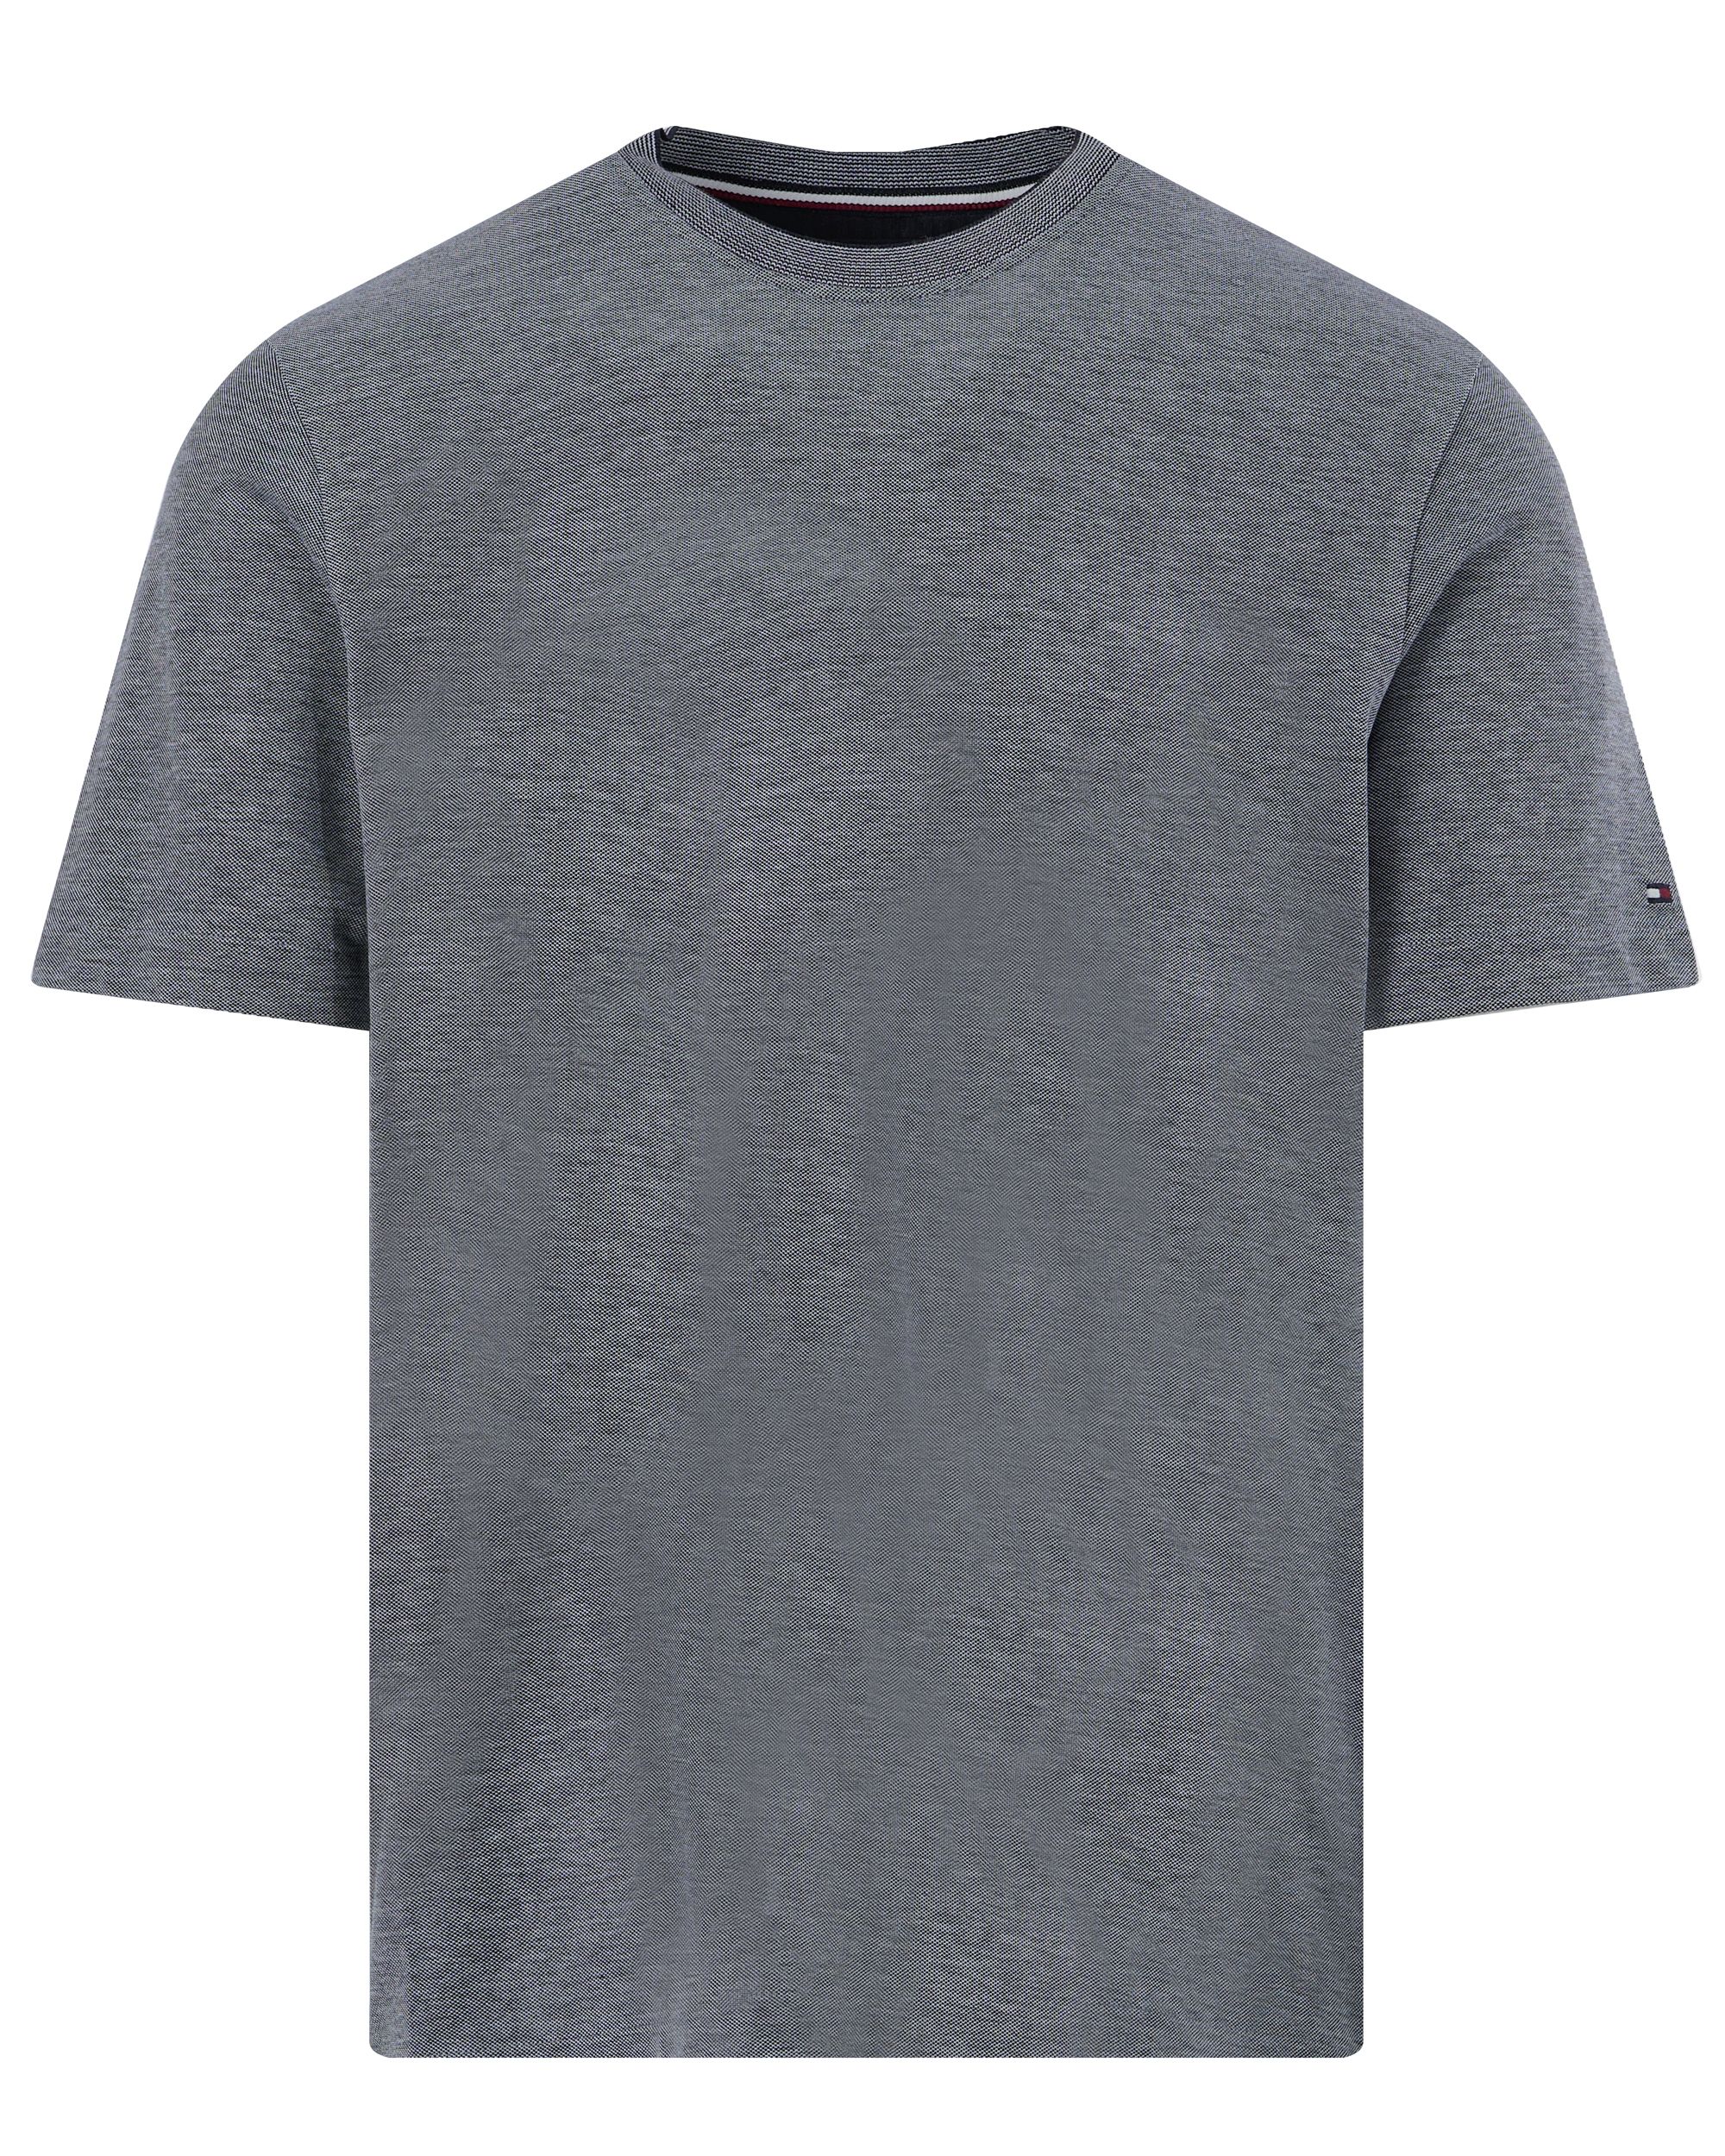 Tommy Hilfiger Menswear T-shirt KM Blauw 094646-001-L